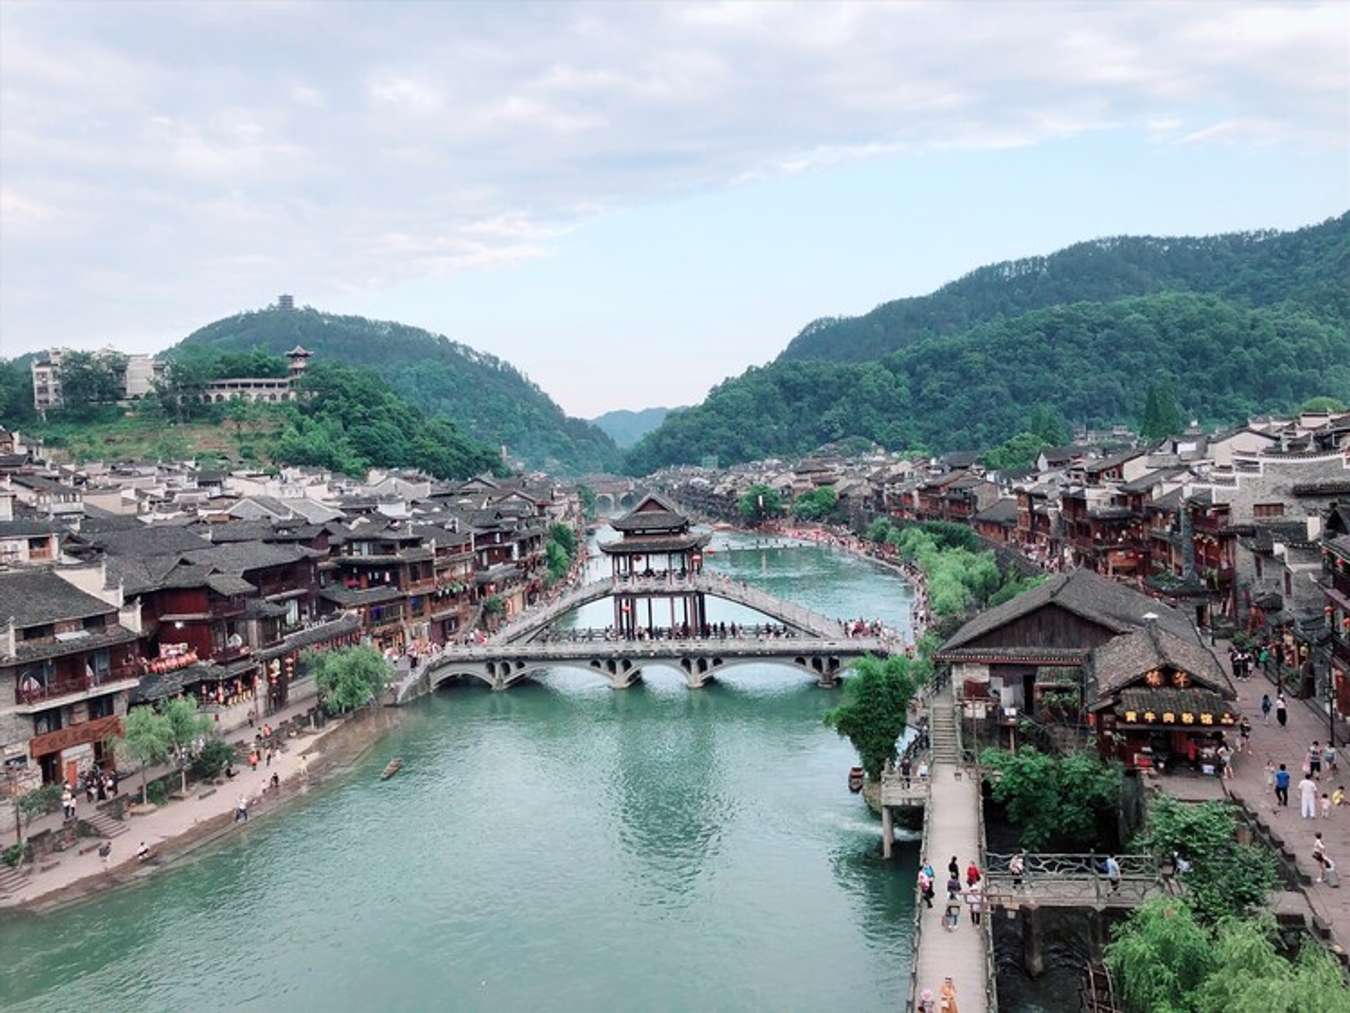 Địa điểm du lịch Trung Quốc: Hãy khám phá văn hóa đa dạng và thiên nhiên tuyệt đẹp của Trung Quốc. Tìm hiểu về những ngôi đền, các khu phố cổ và thả mình vào cuộc sống độc đáo của người dân địa phương. Hãy bắt đầu hành trình khám phá đất nước này ngay hôm nay!